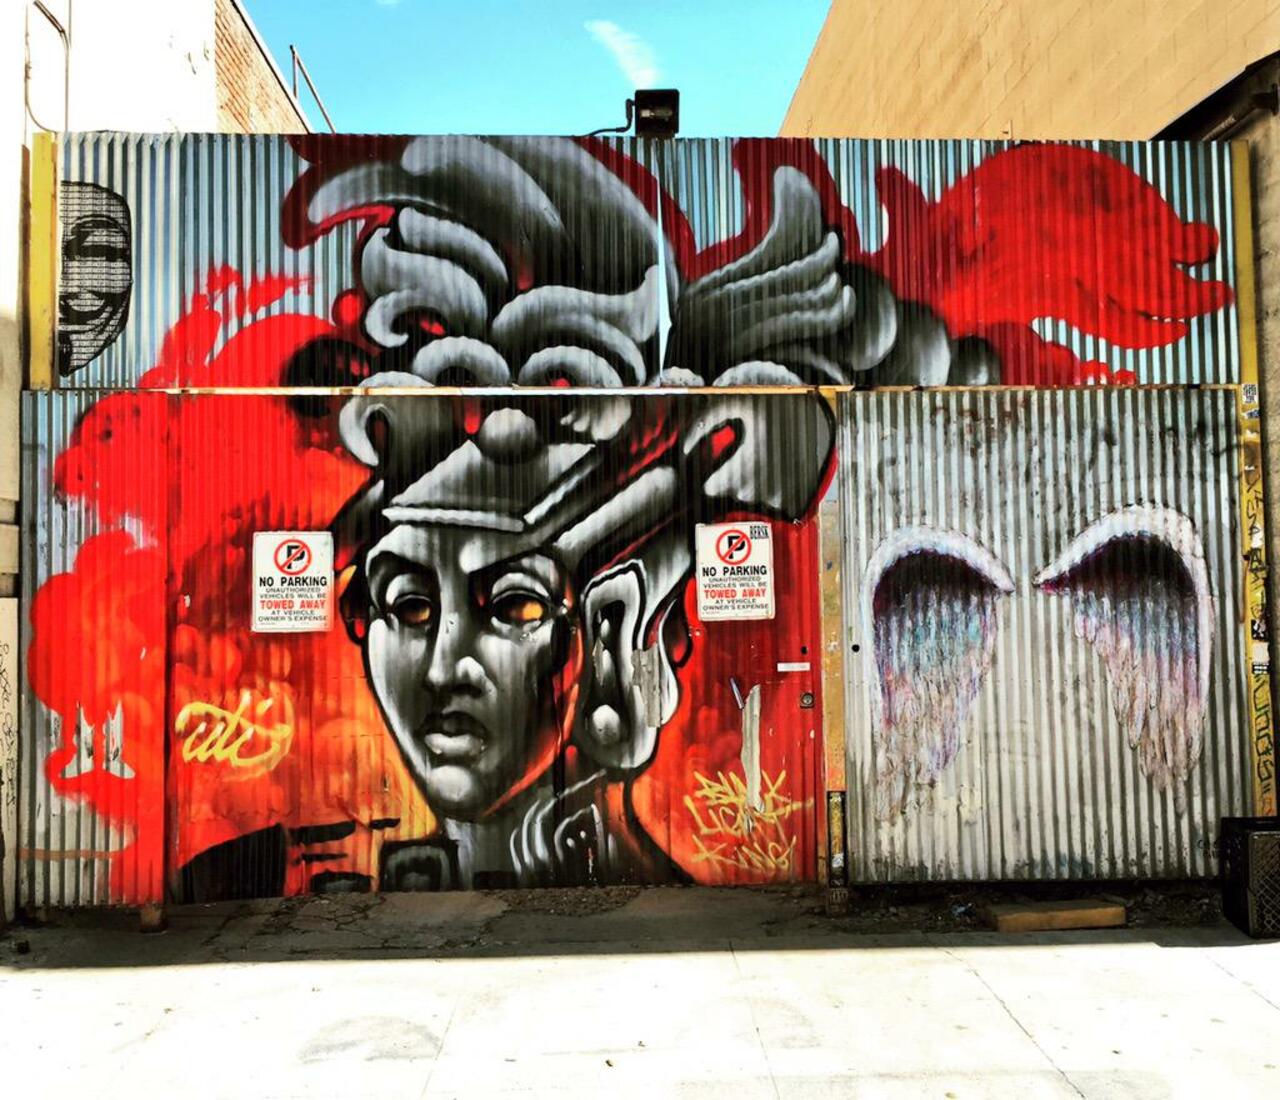 RT @Brooklywood: #LosAngeles #DTLA #ArtsDistrict #StreetArt #Graffiti #UTI http://t.co/0Fs4ckYqkV